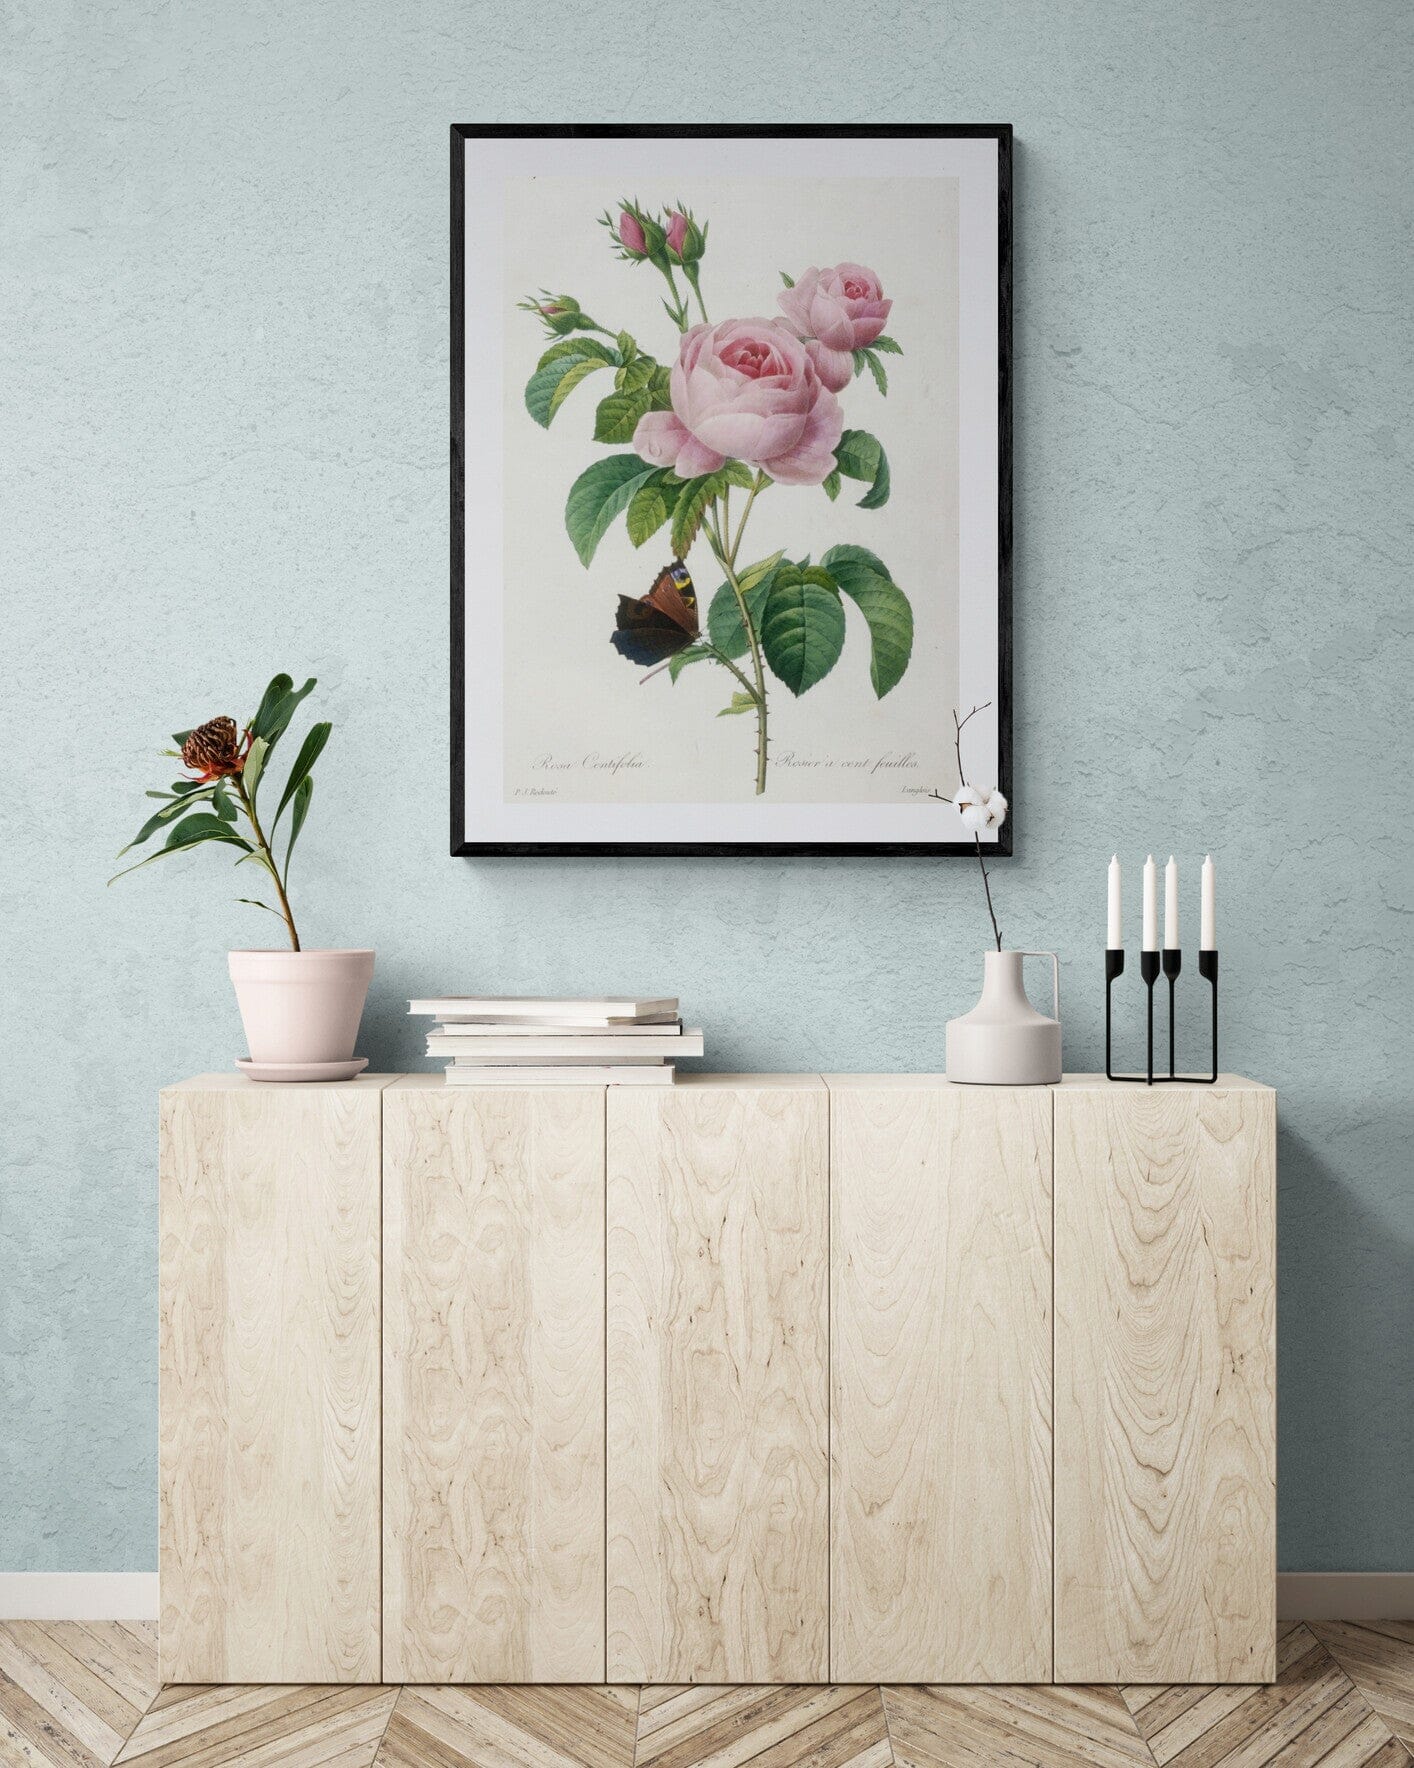 Botanical 100 petal rose (1800s) | Vintage botanical prints | Pierre-Joseph Redouté Posters, Prints, & Visual Artwork The Trumpet Shop Vintage Prints   